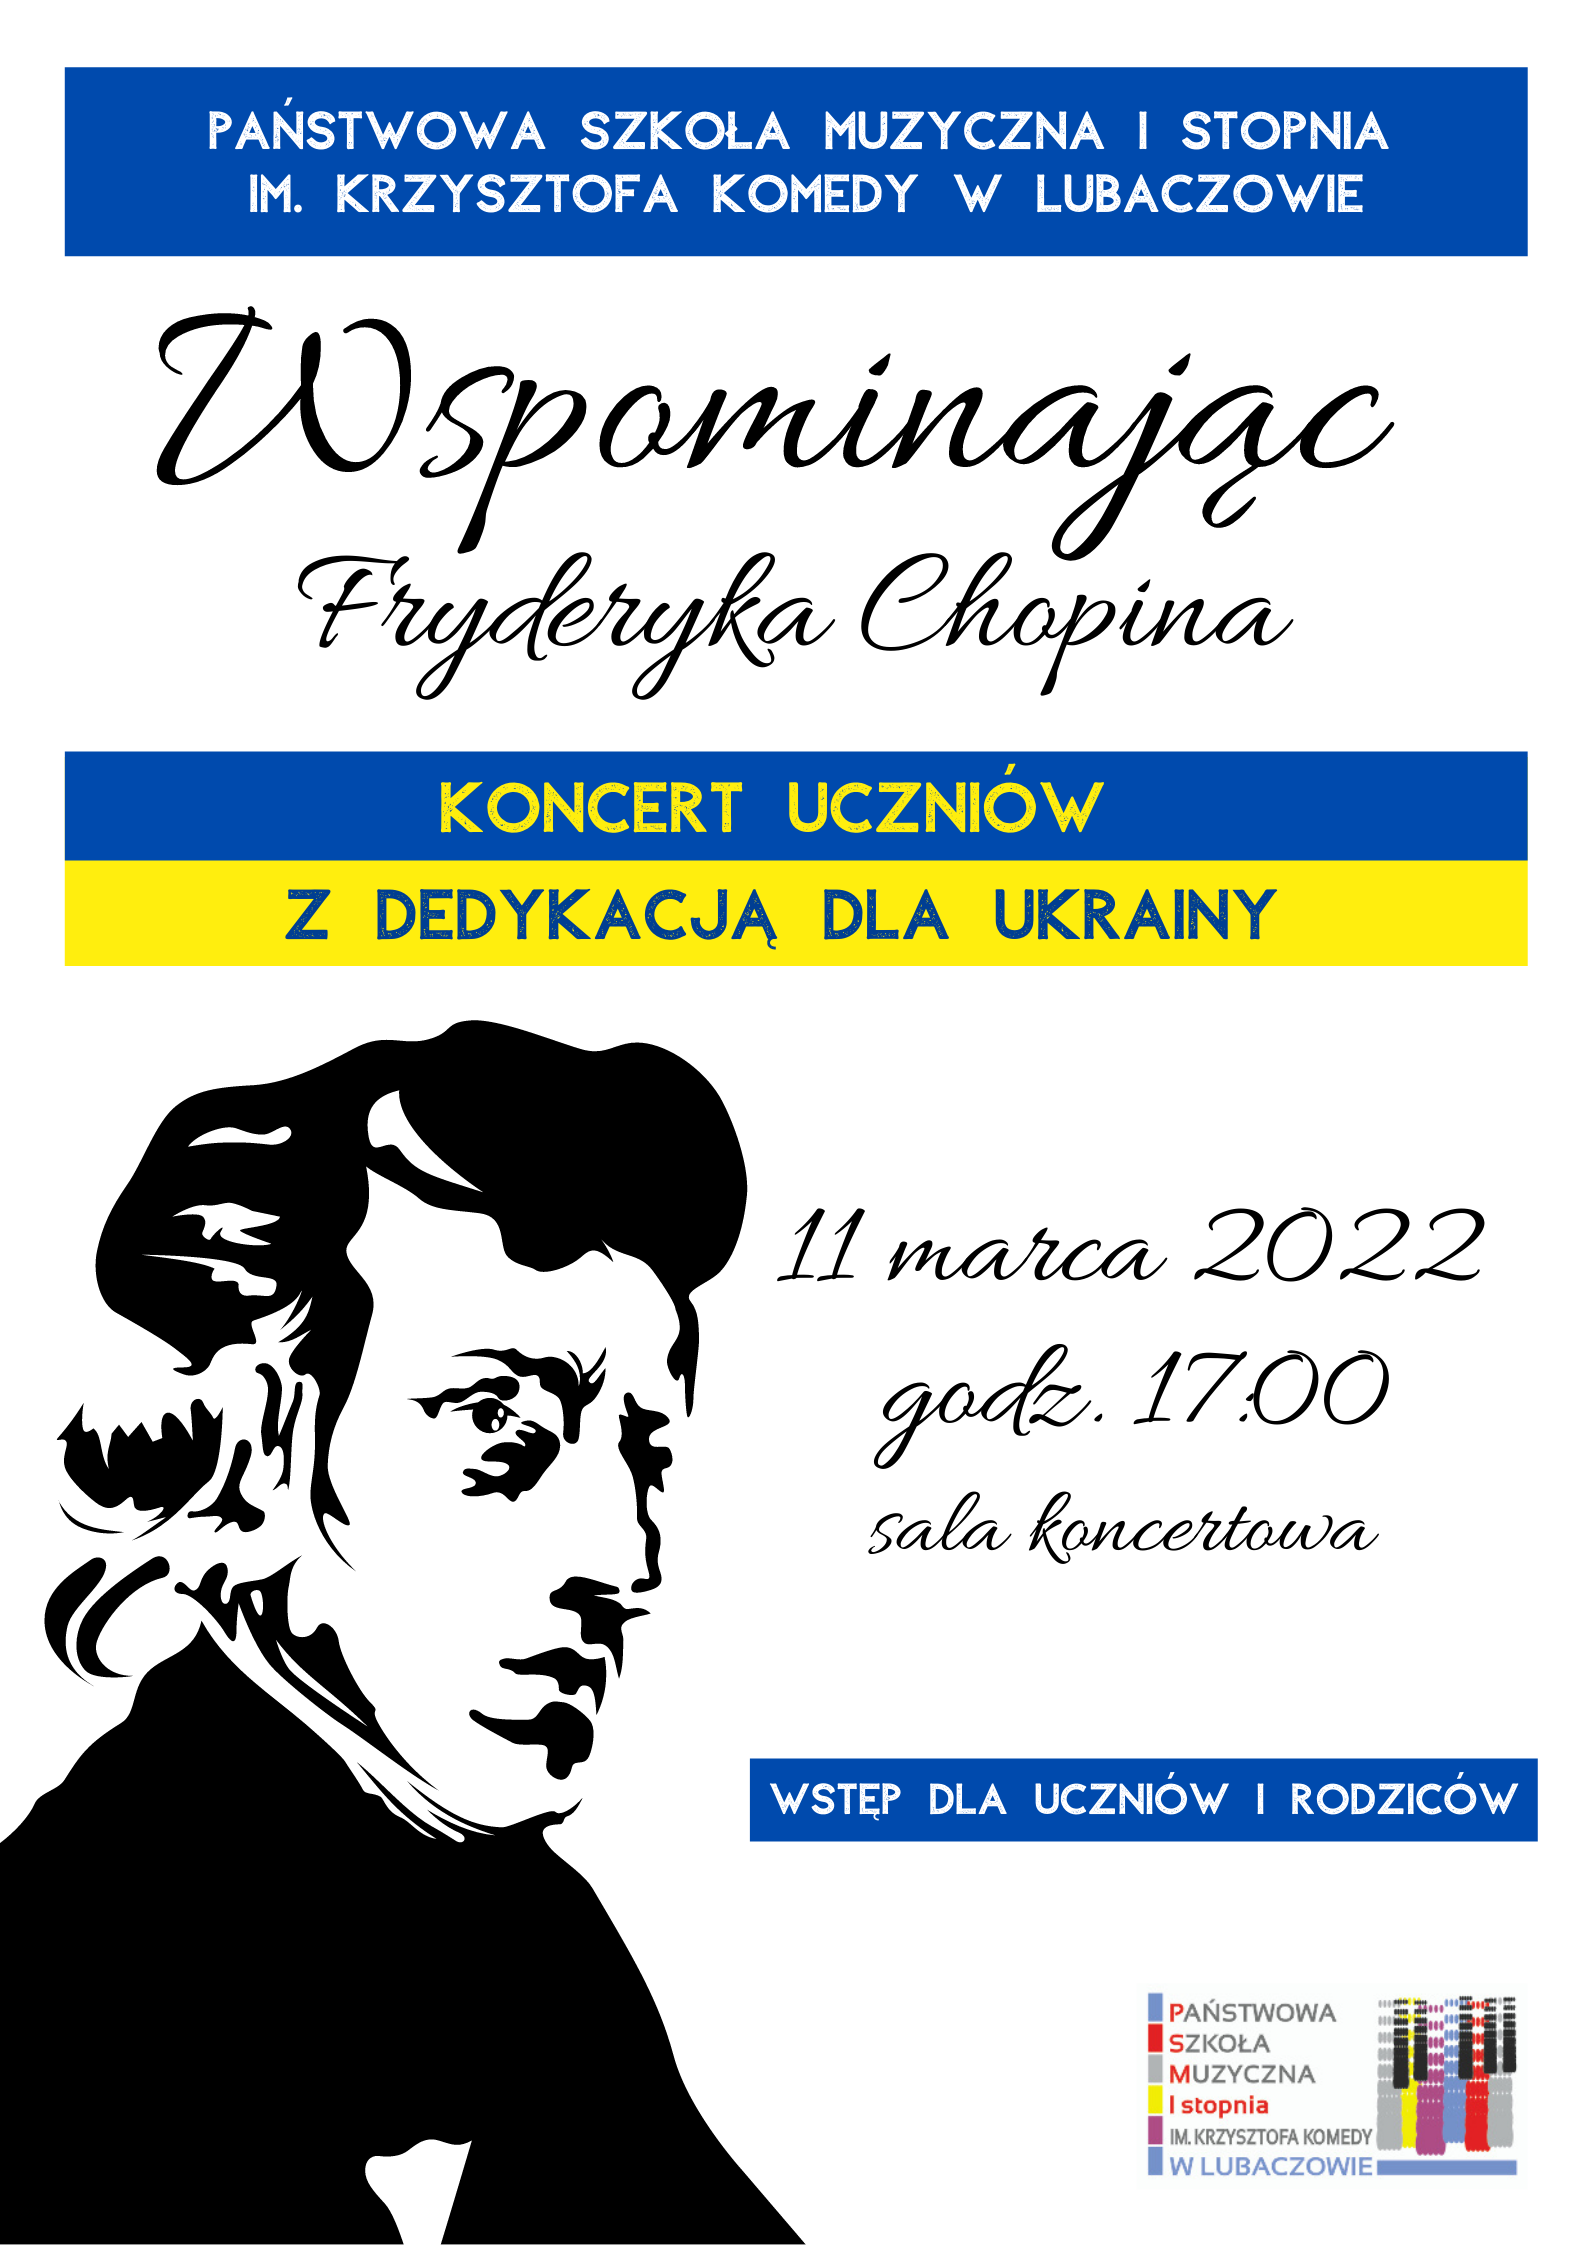 Plakat koncertu uczniów z dedykacją dla Ukrainy - 11 marca 2022 - godz. 17.00